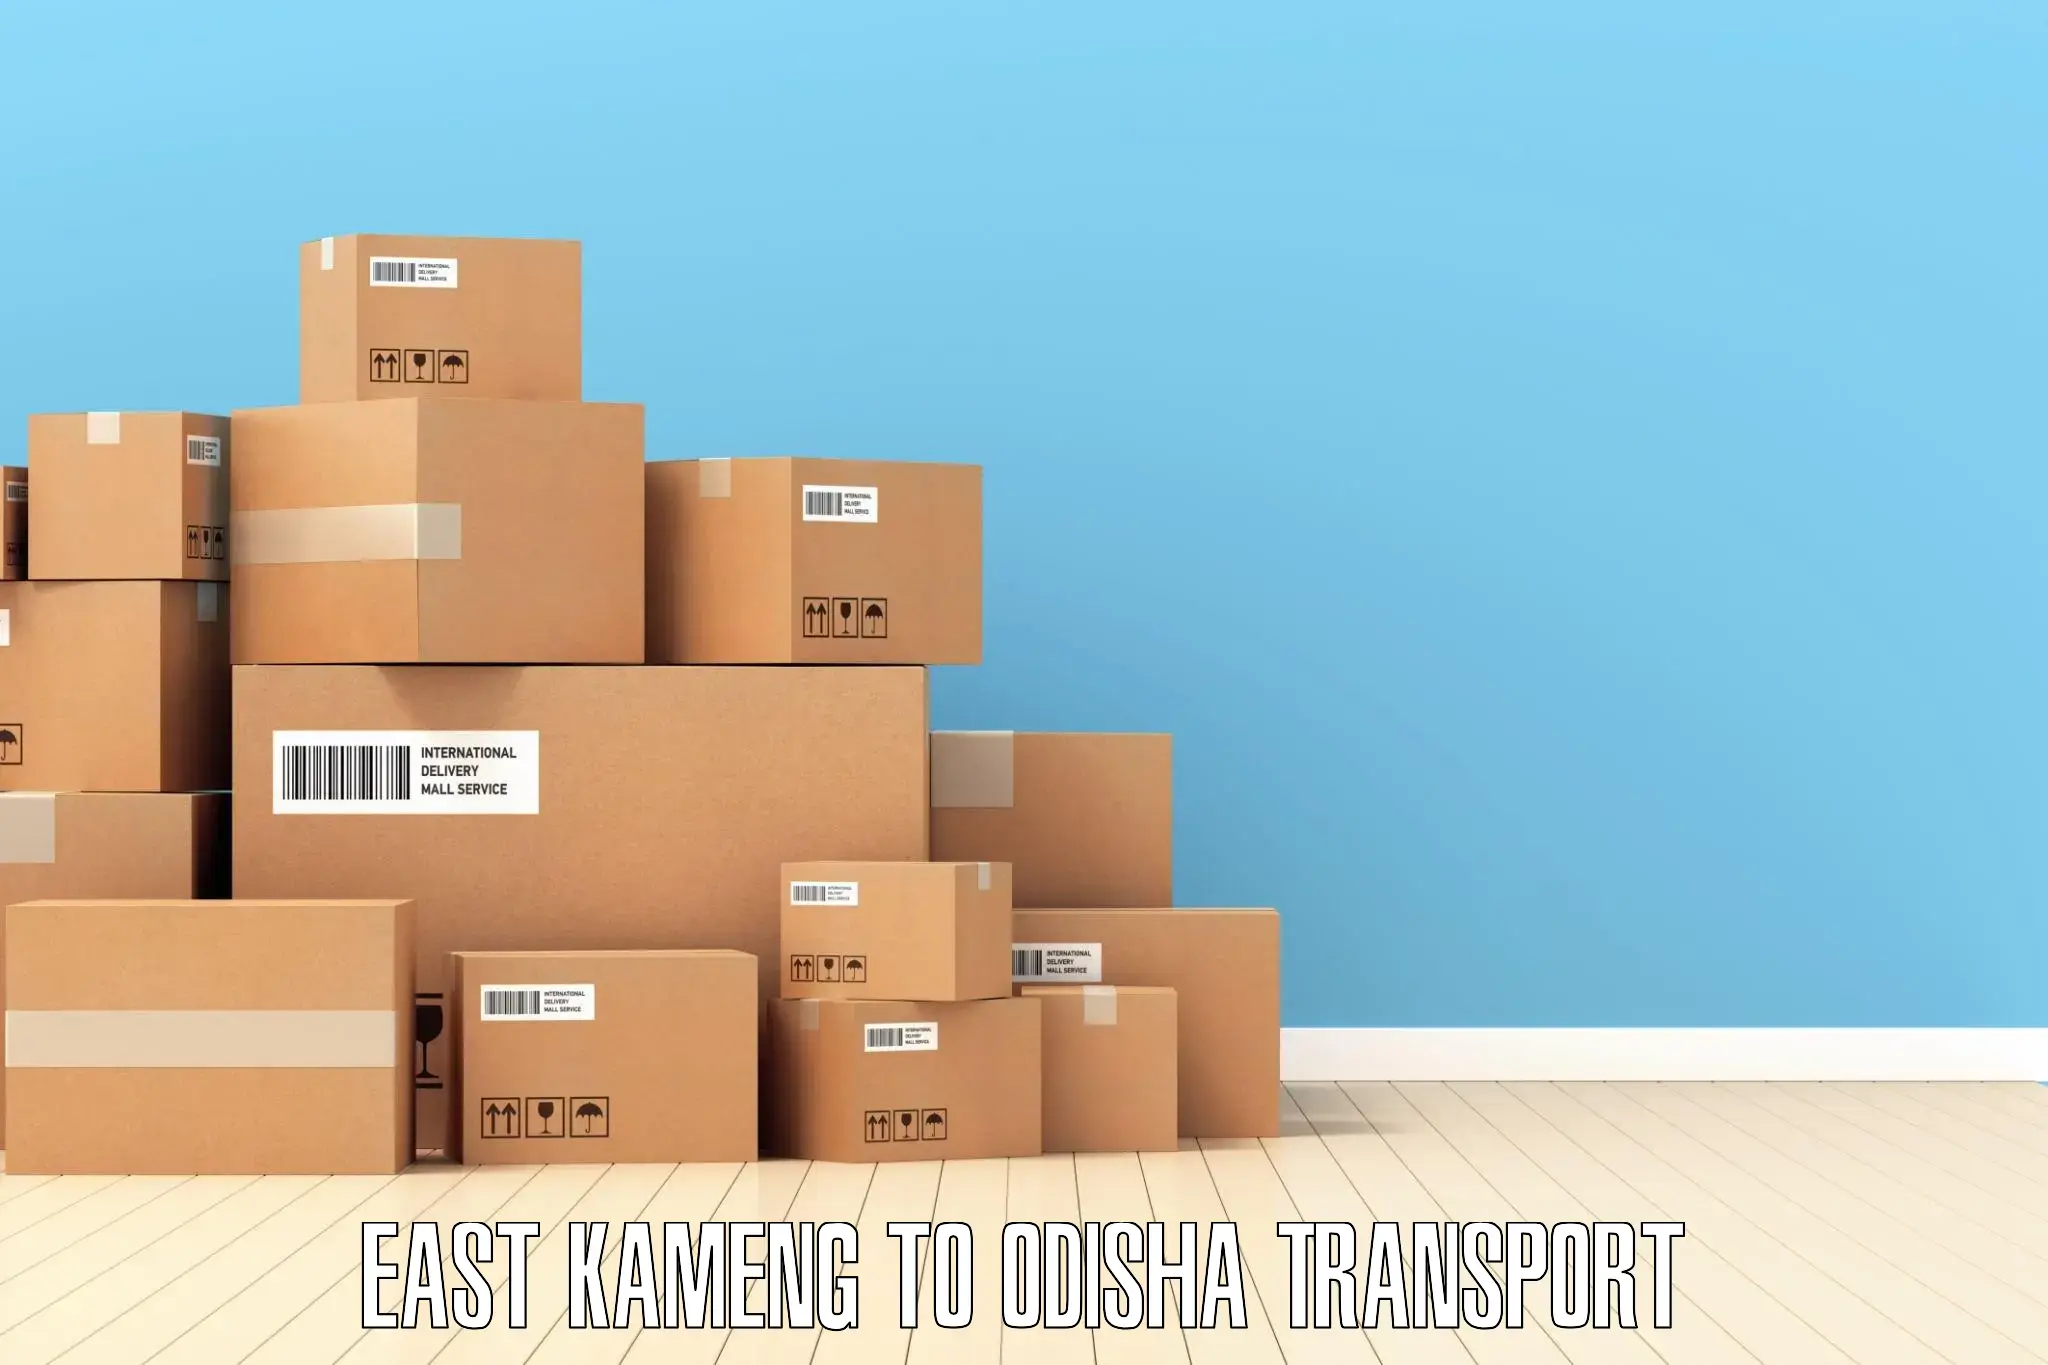 Online transport service East Kameng to Barkote